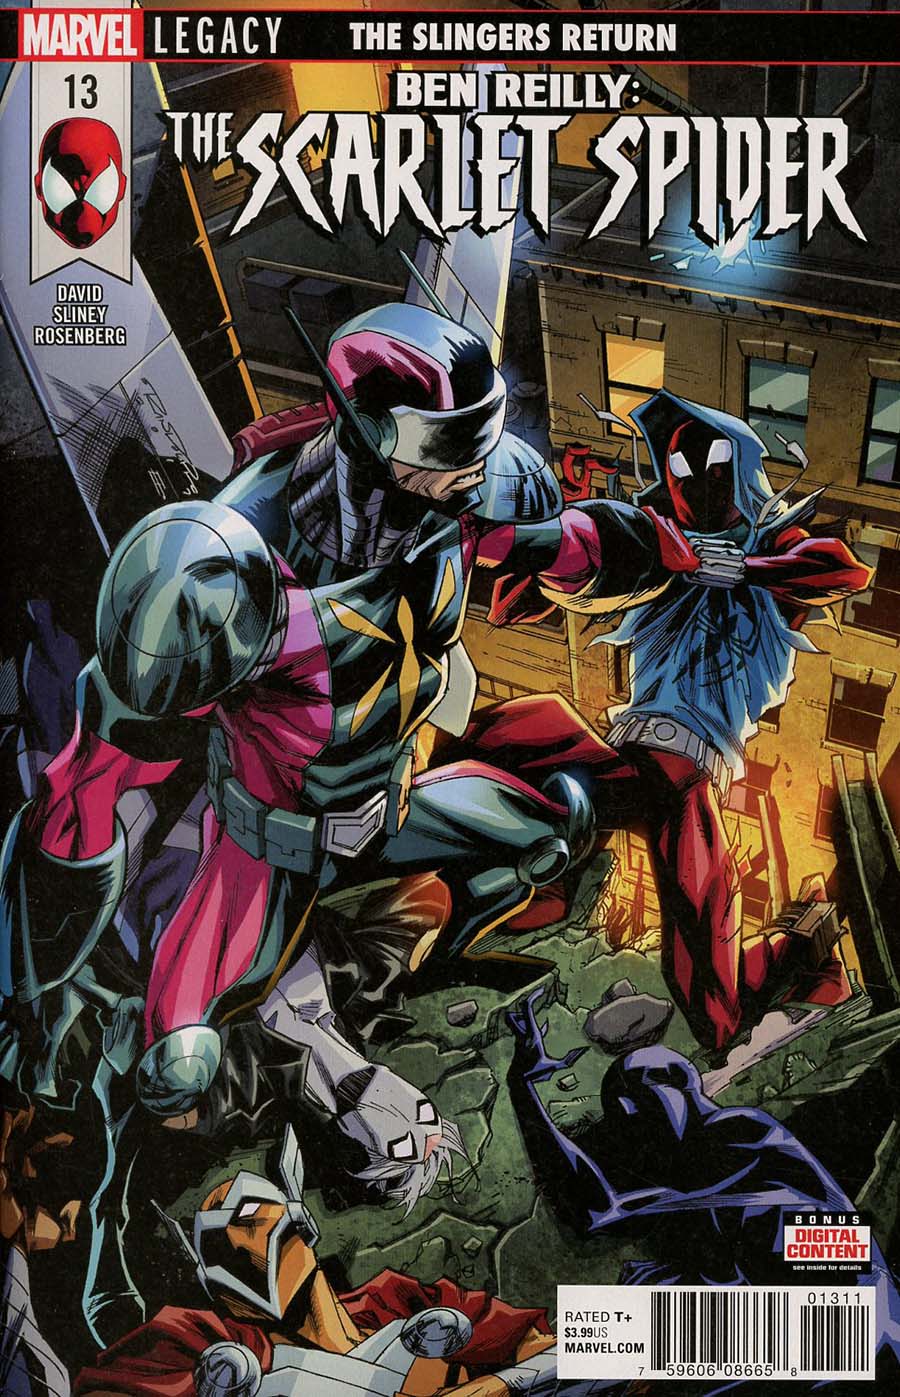 Ben Reilly The Scarlet Spider #13 (Marvel Legacy Tie-In)